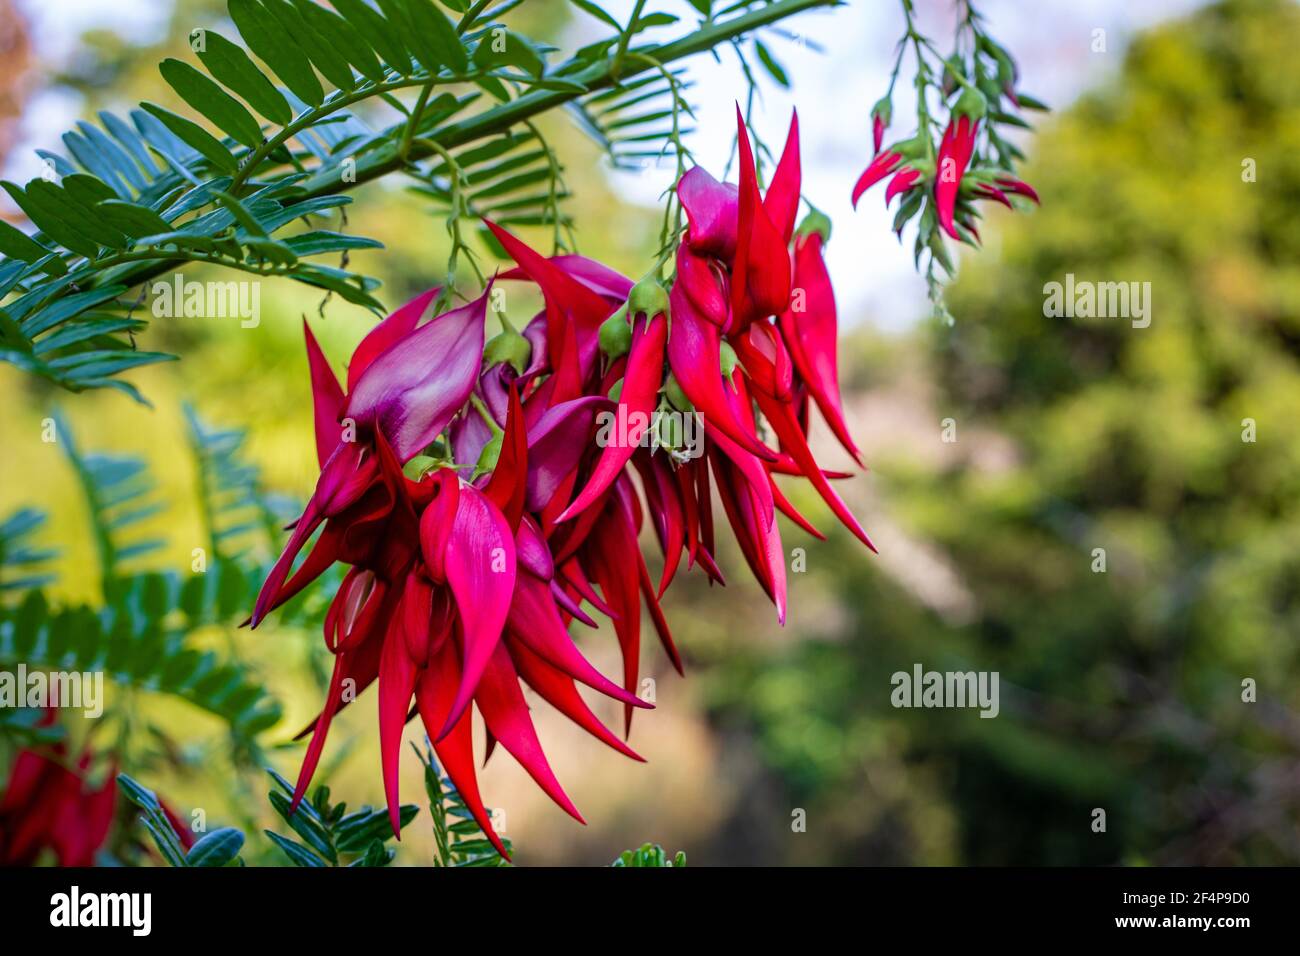 Die schönen Blütentrauben auf der Kakabeak-Pflanze (Clianthus puniceus). Diese Pflanzenart ist in Neuseeland heimisch und endemisch. Stockfoto